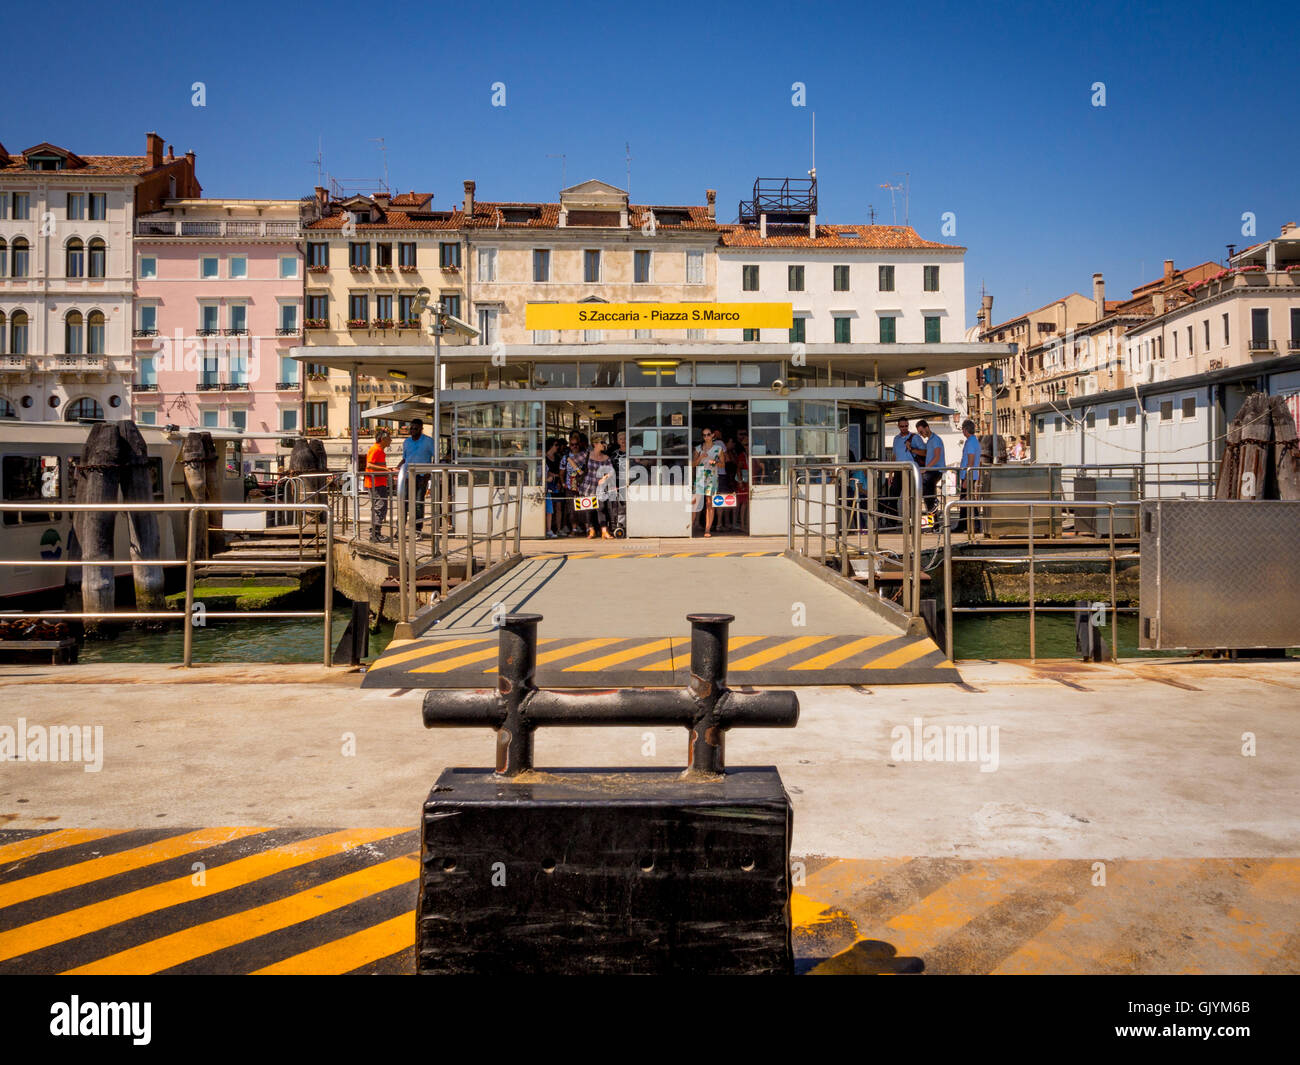 Poller, eine stationäre Vaporetto bis mit dem Terminal in den Hintergrund zu sichern. Venedig, Italien. Stockfoto